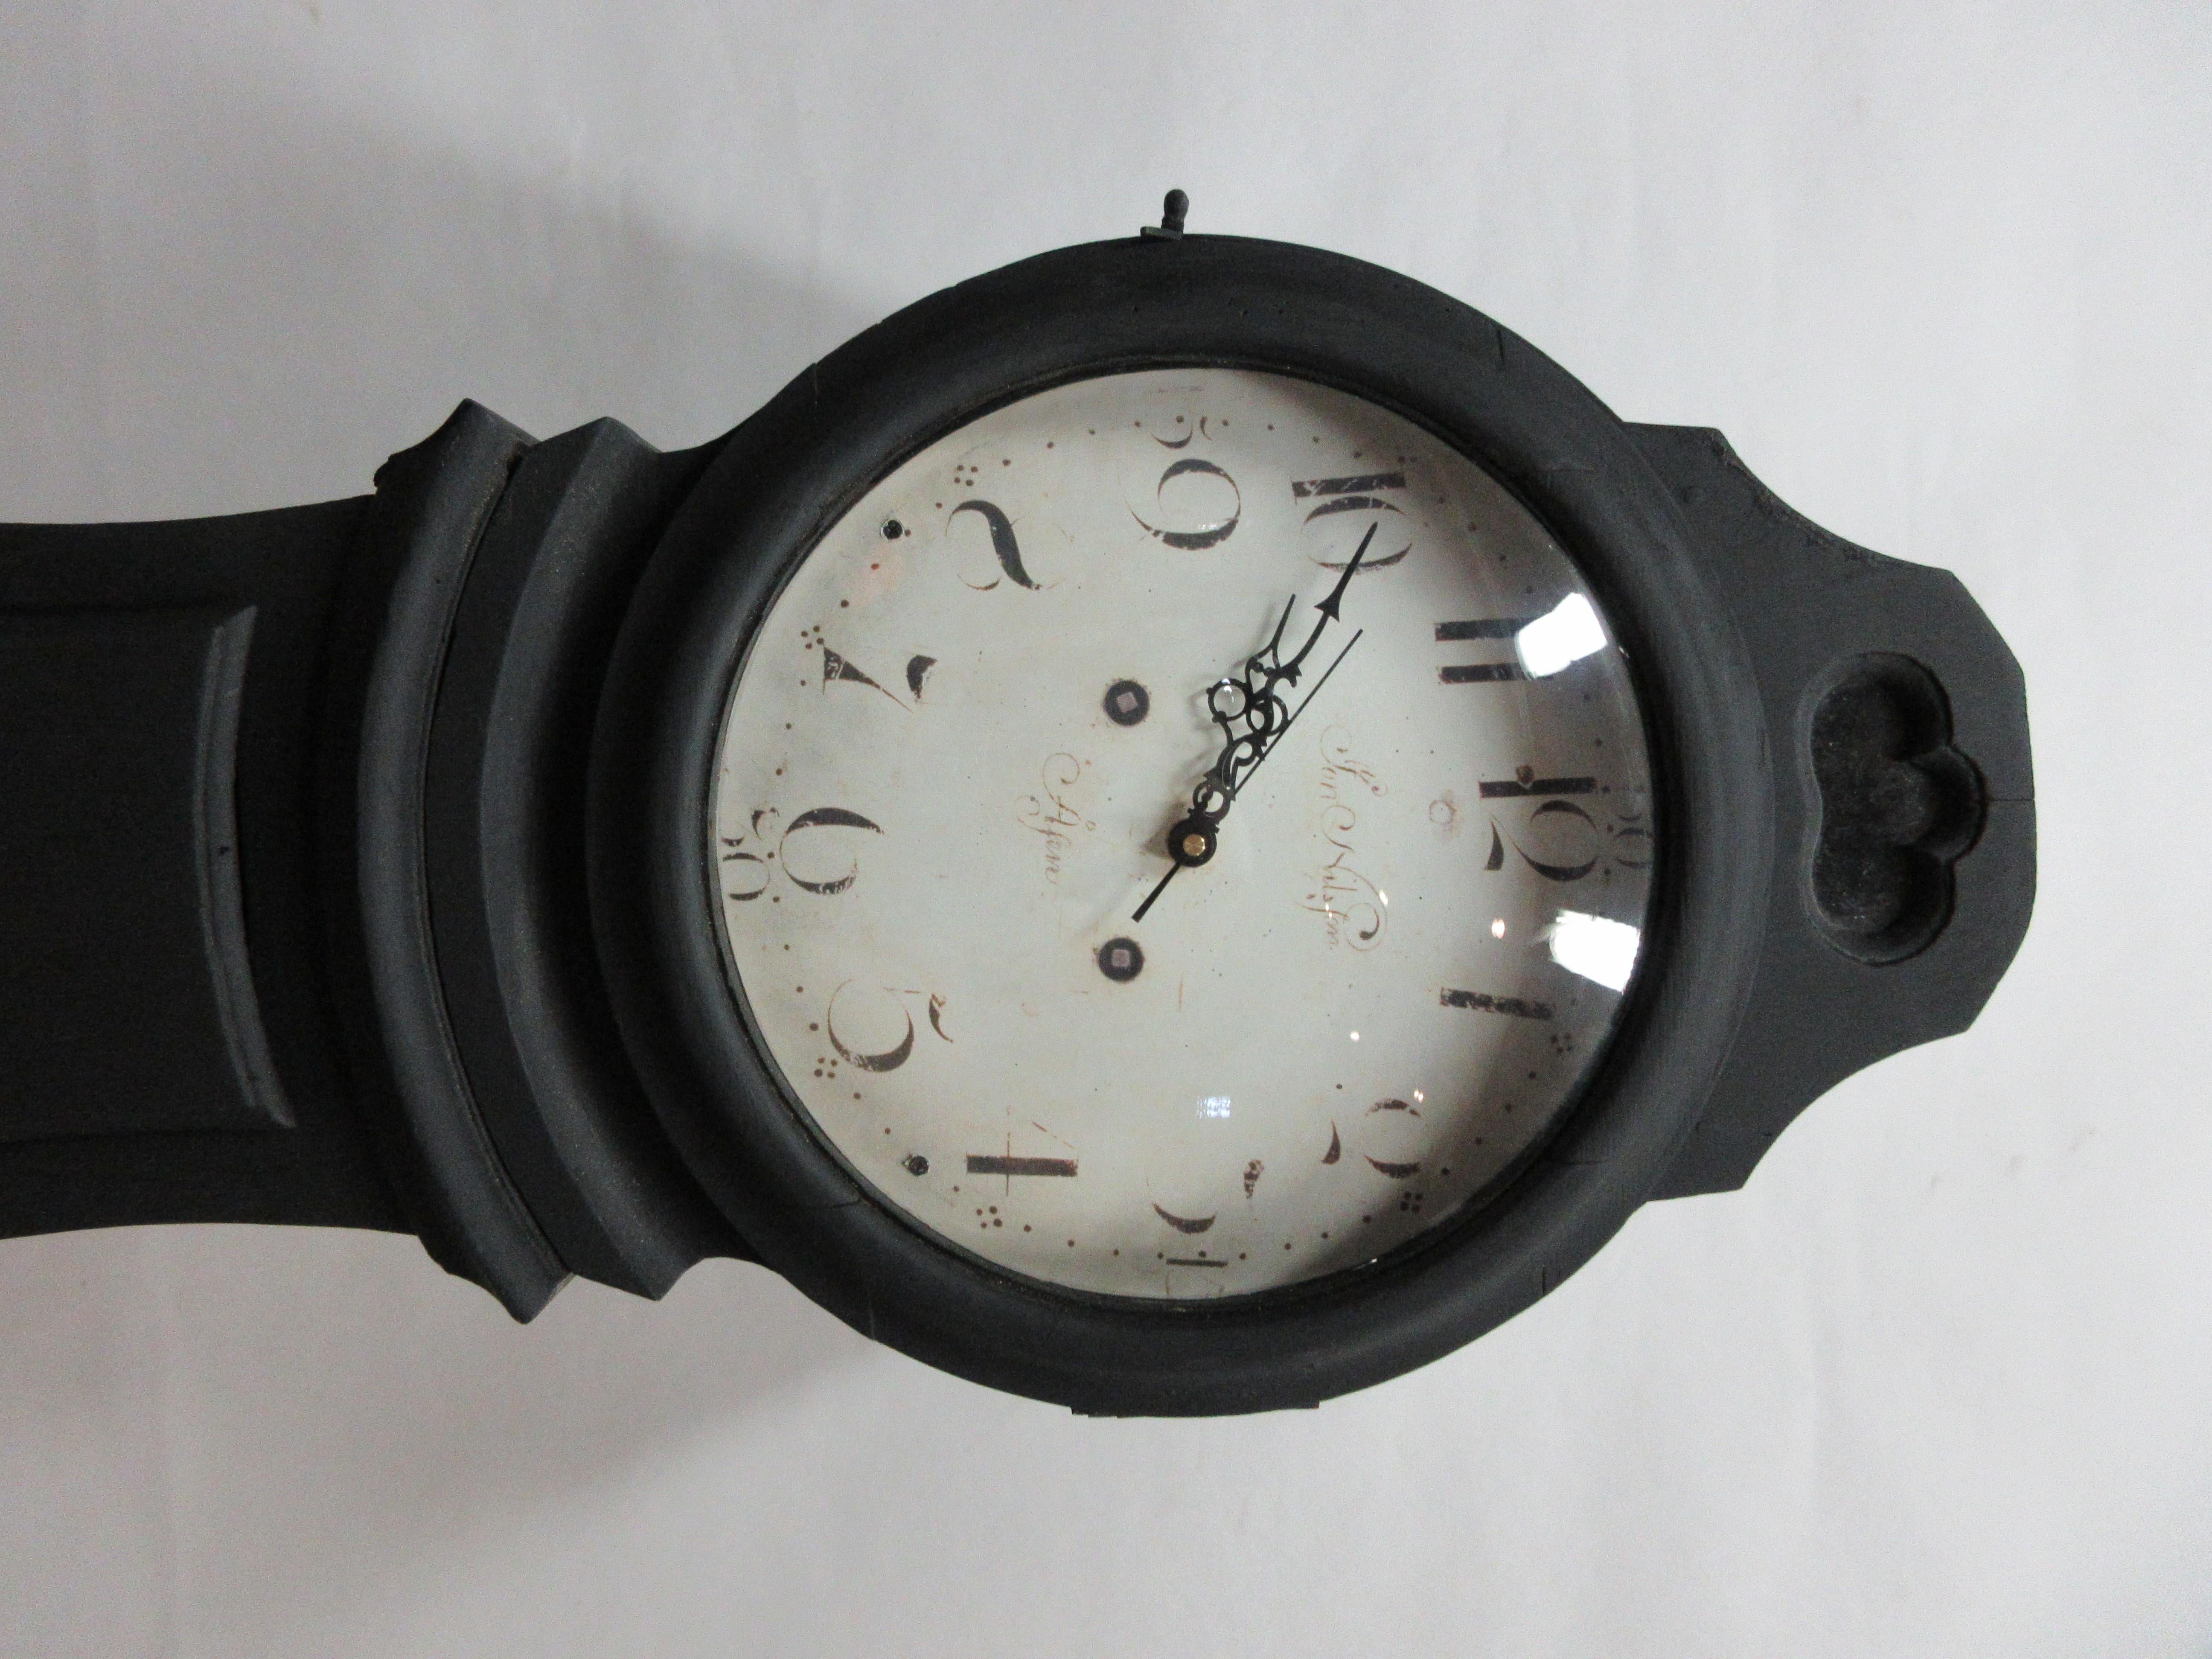 Il s'agit d'une horloge suédoise Mora, modèle Norrland. De nouvelles batteries ont été installées avec un visage de reproduction. Vous avez le choix entre plusieurs carillons, un bouton de volume, un interrupteur qui empêche la sonnerie nocturne et